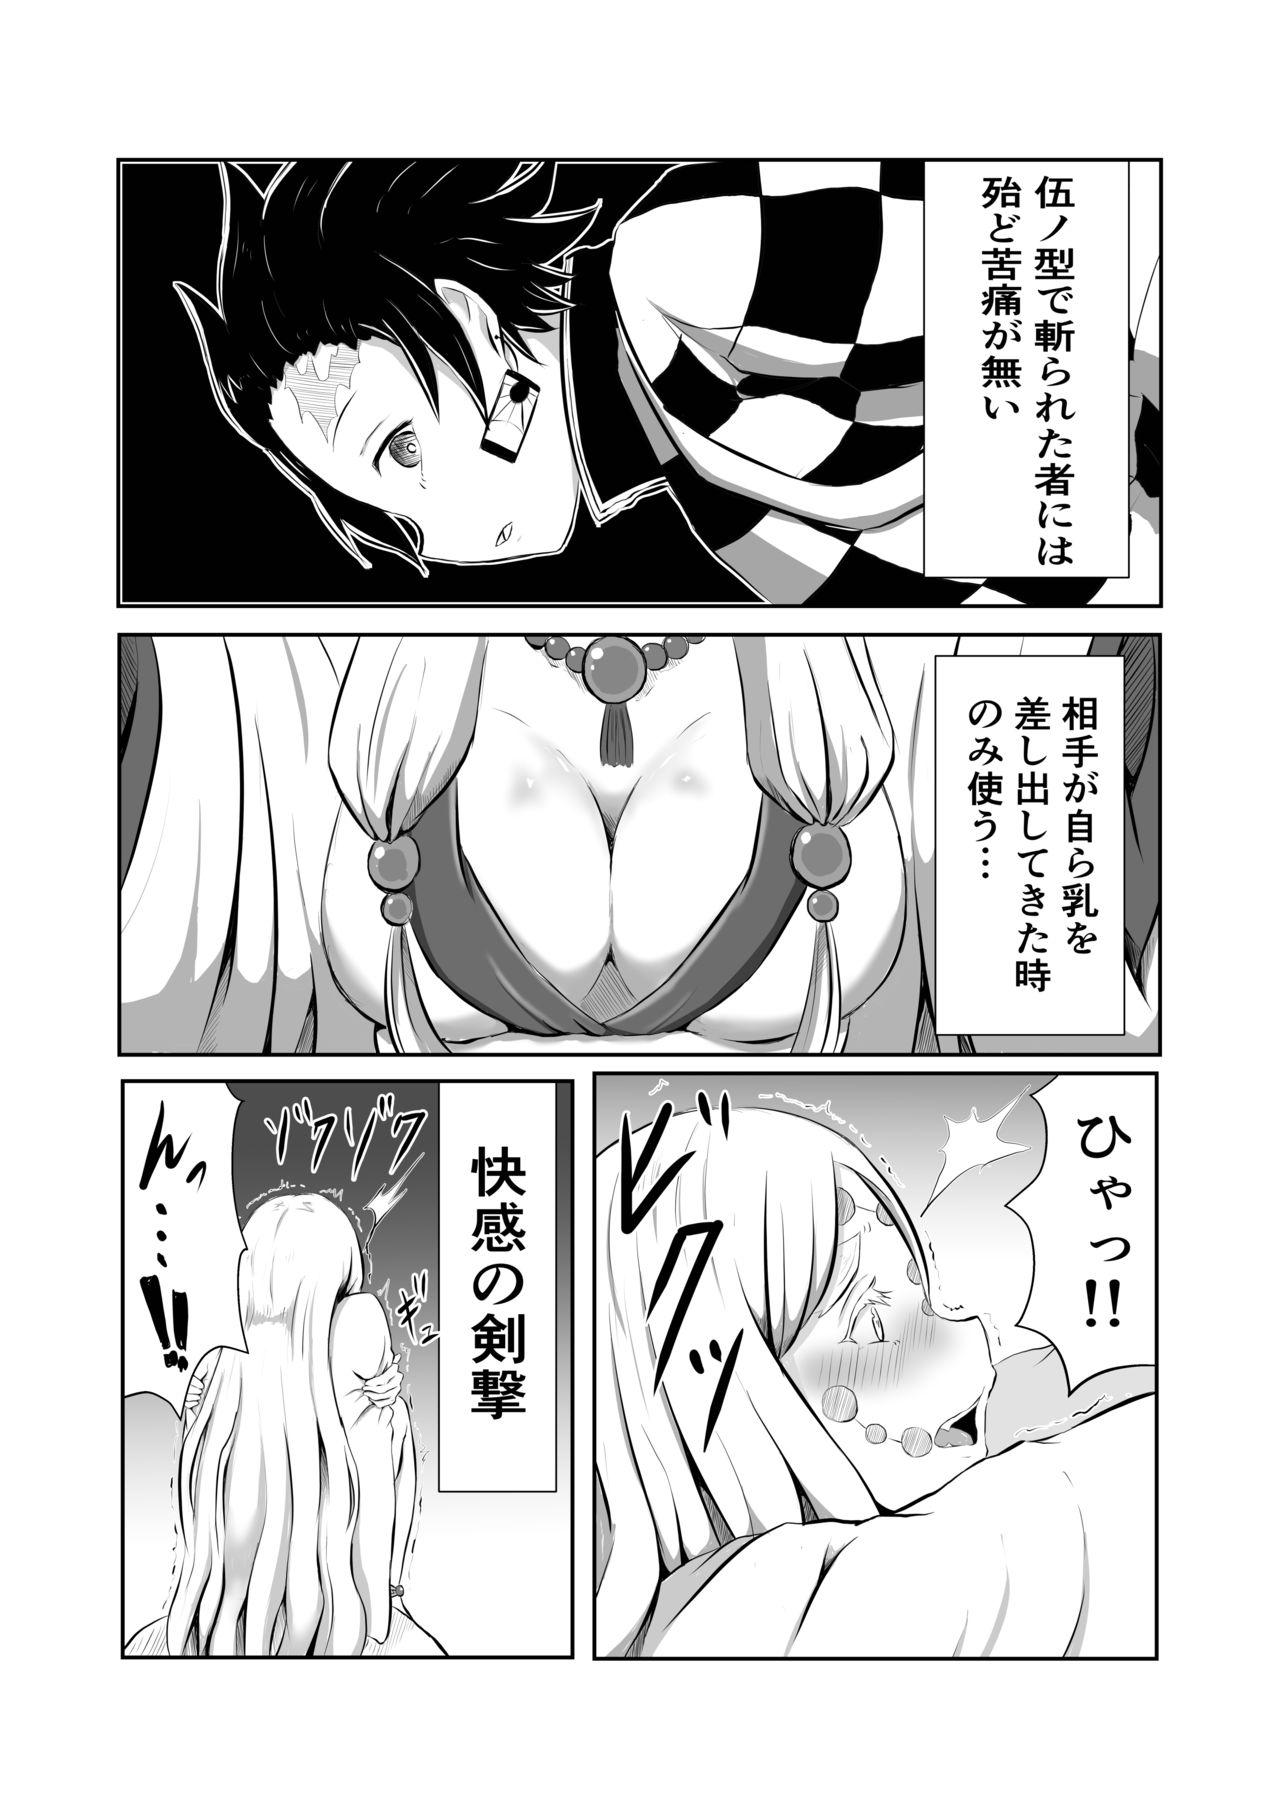 Club Hinokami Sex. - Kimetsu no yaiba | demon slayer Virgin - Page 4